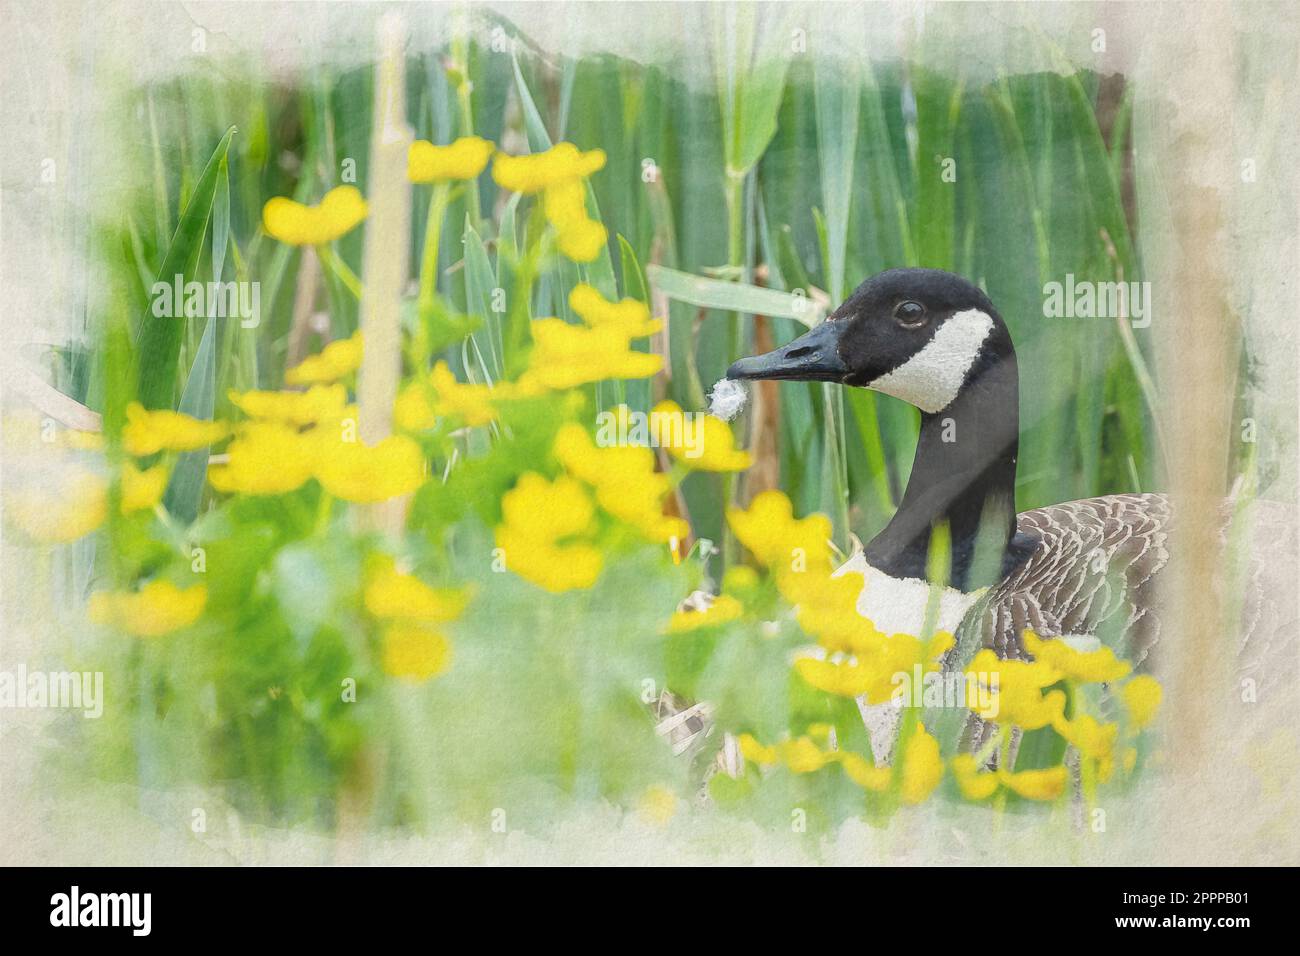 Un profil de peinture aquarelle numérique en gros plan d'une seule oie du canada isolée dans un lit de fleurs jaunes. Banque D'Images